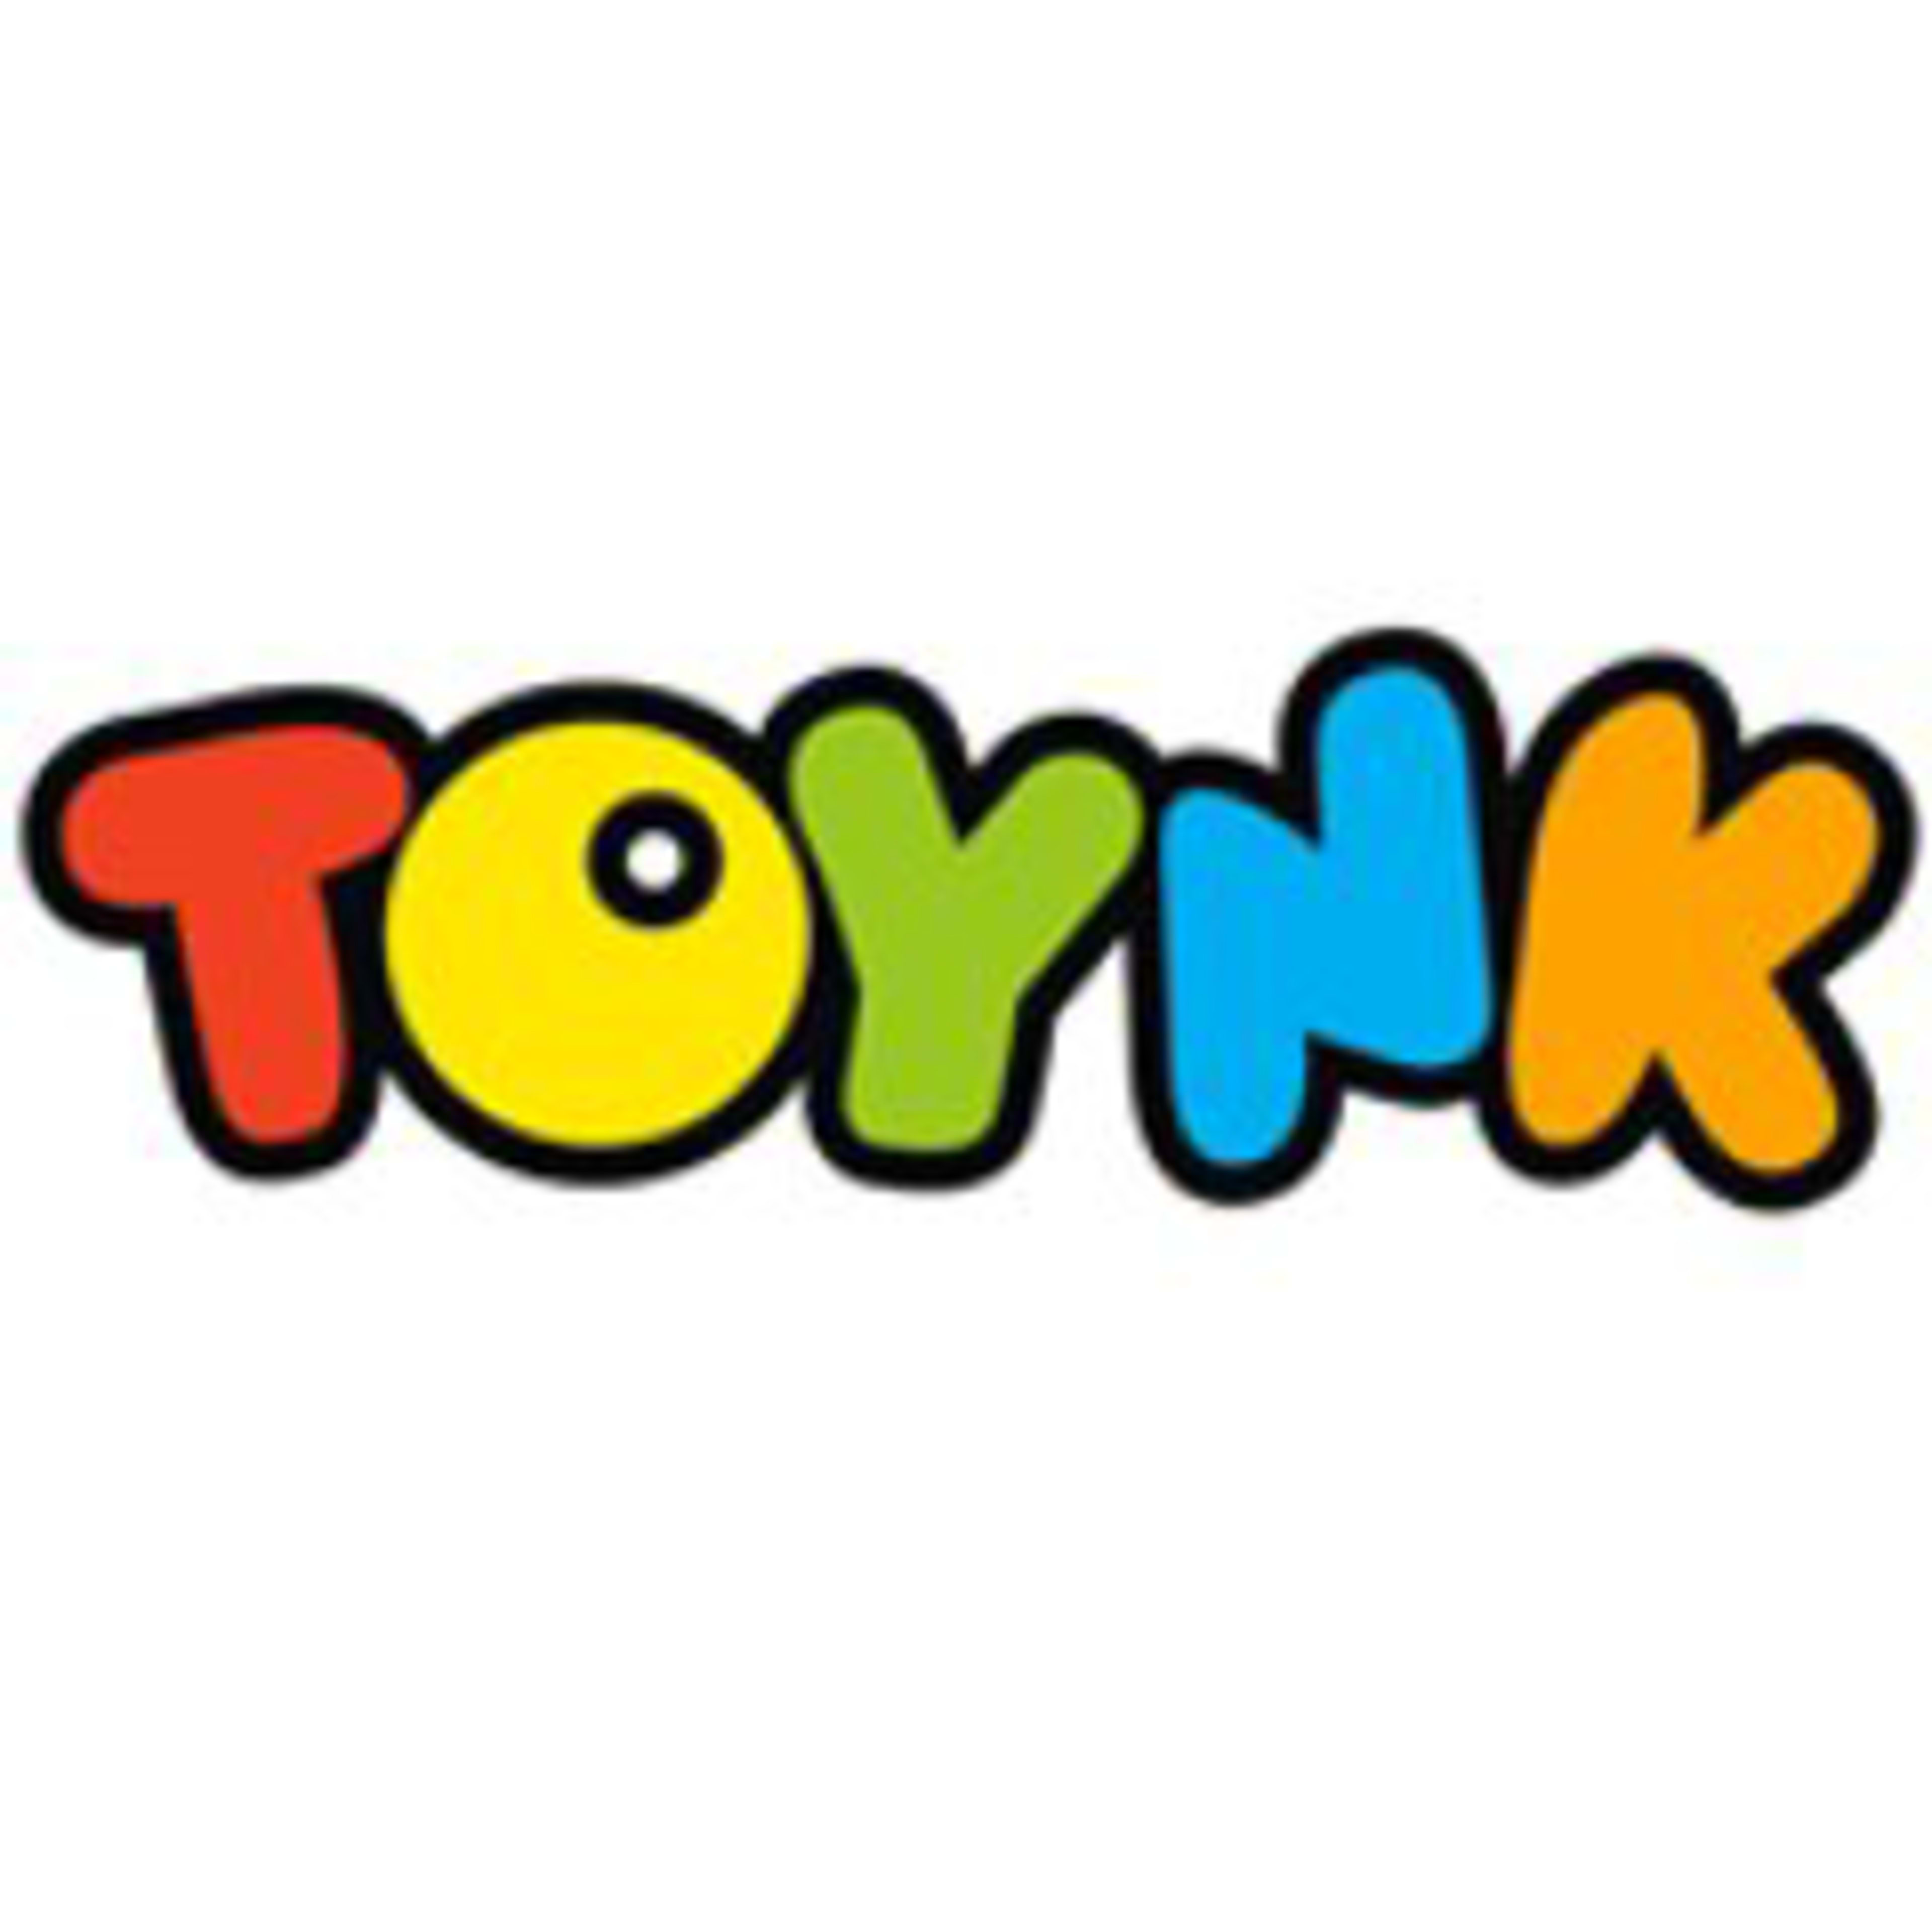 Toynk ToysCode